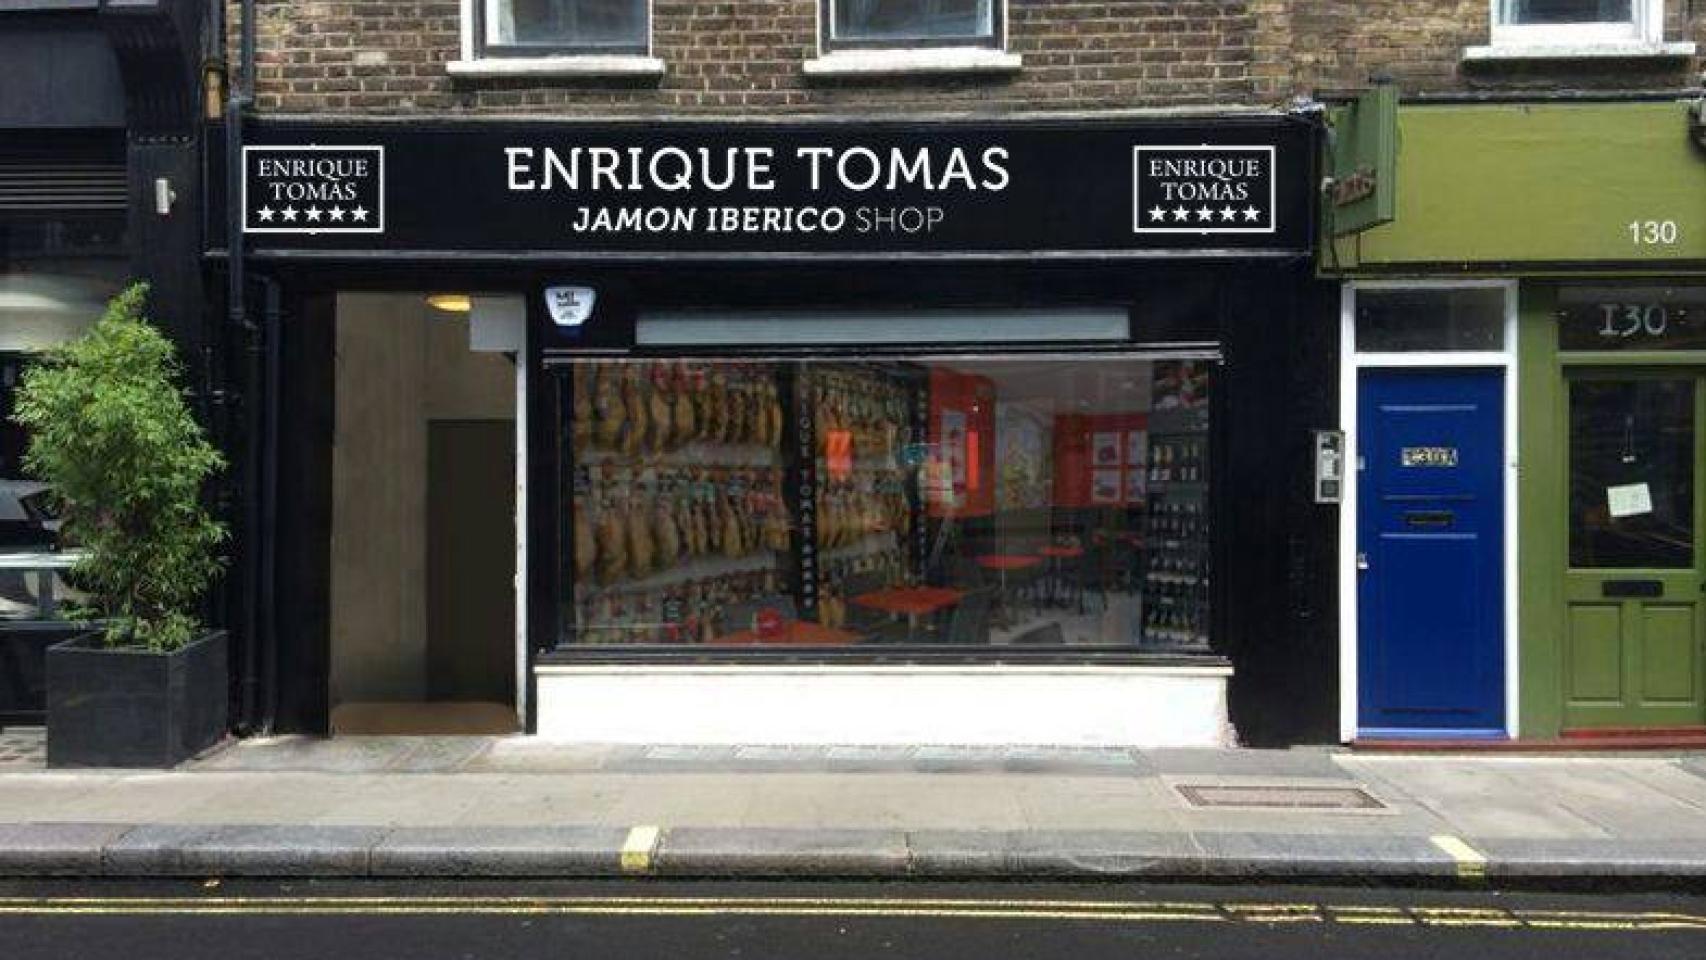 Tienda de Enrique Tomás en el Soho londienense.